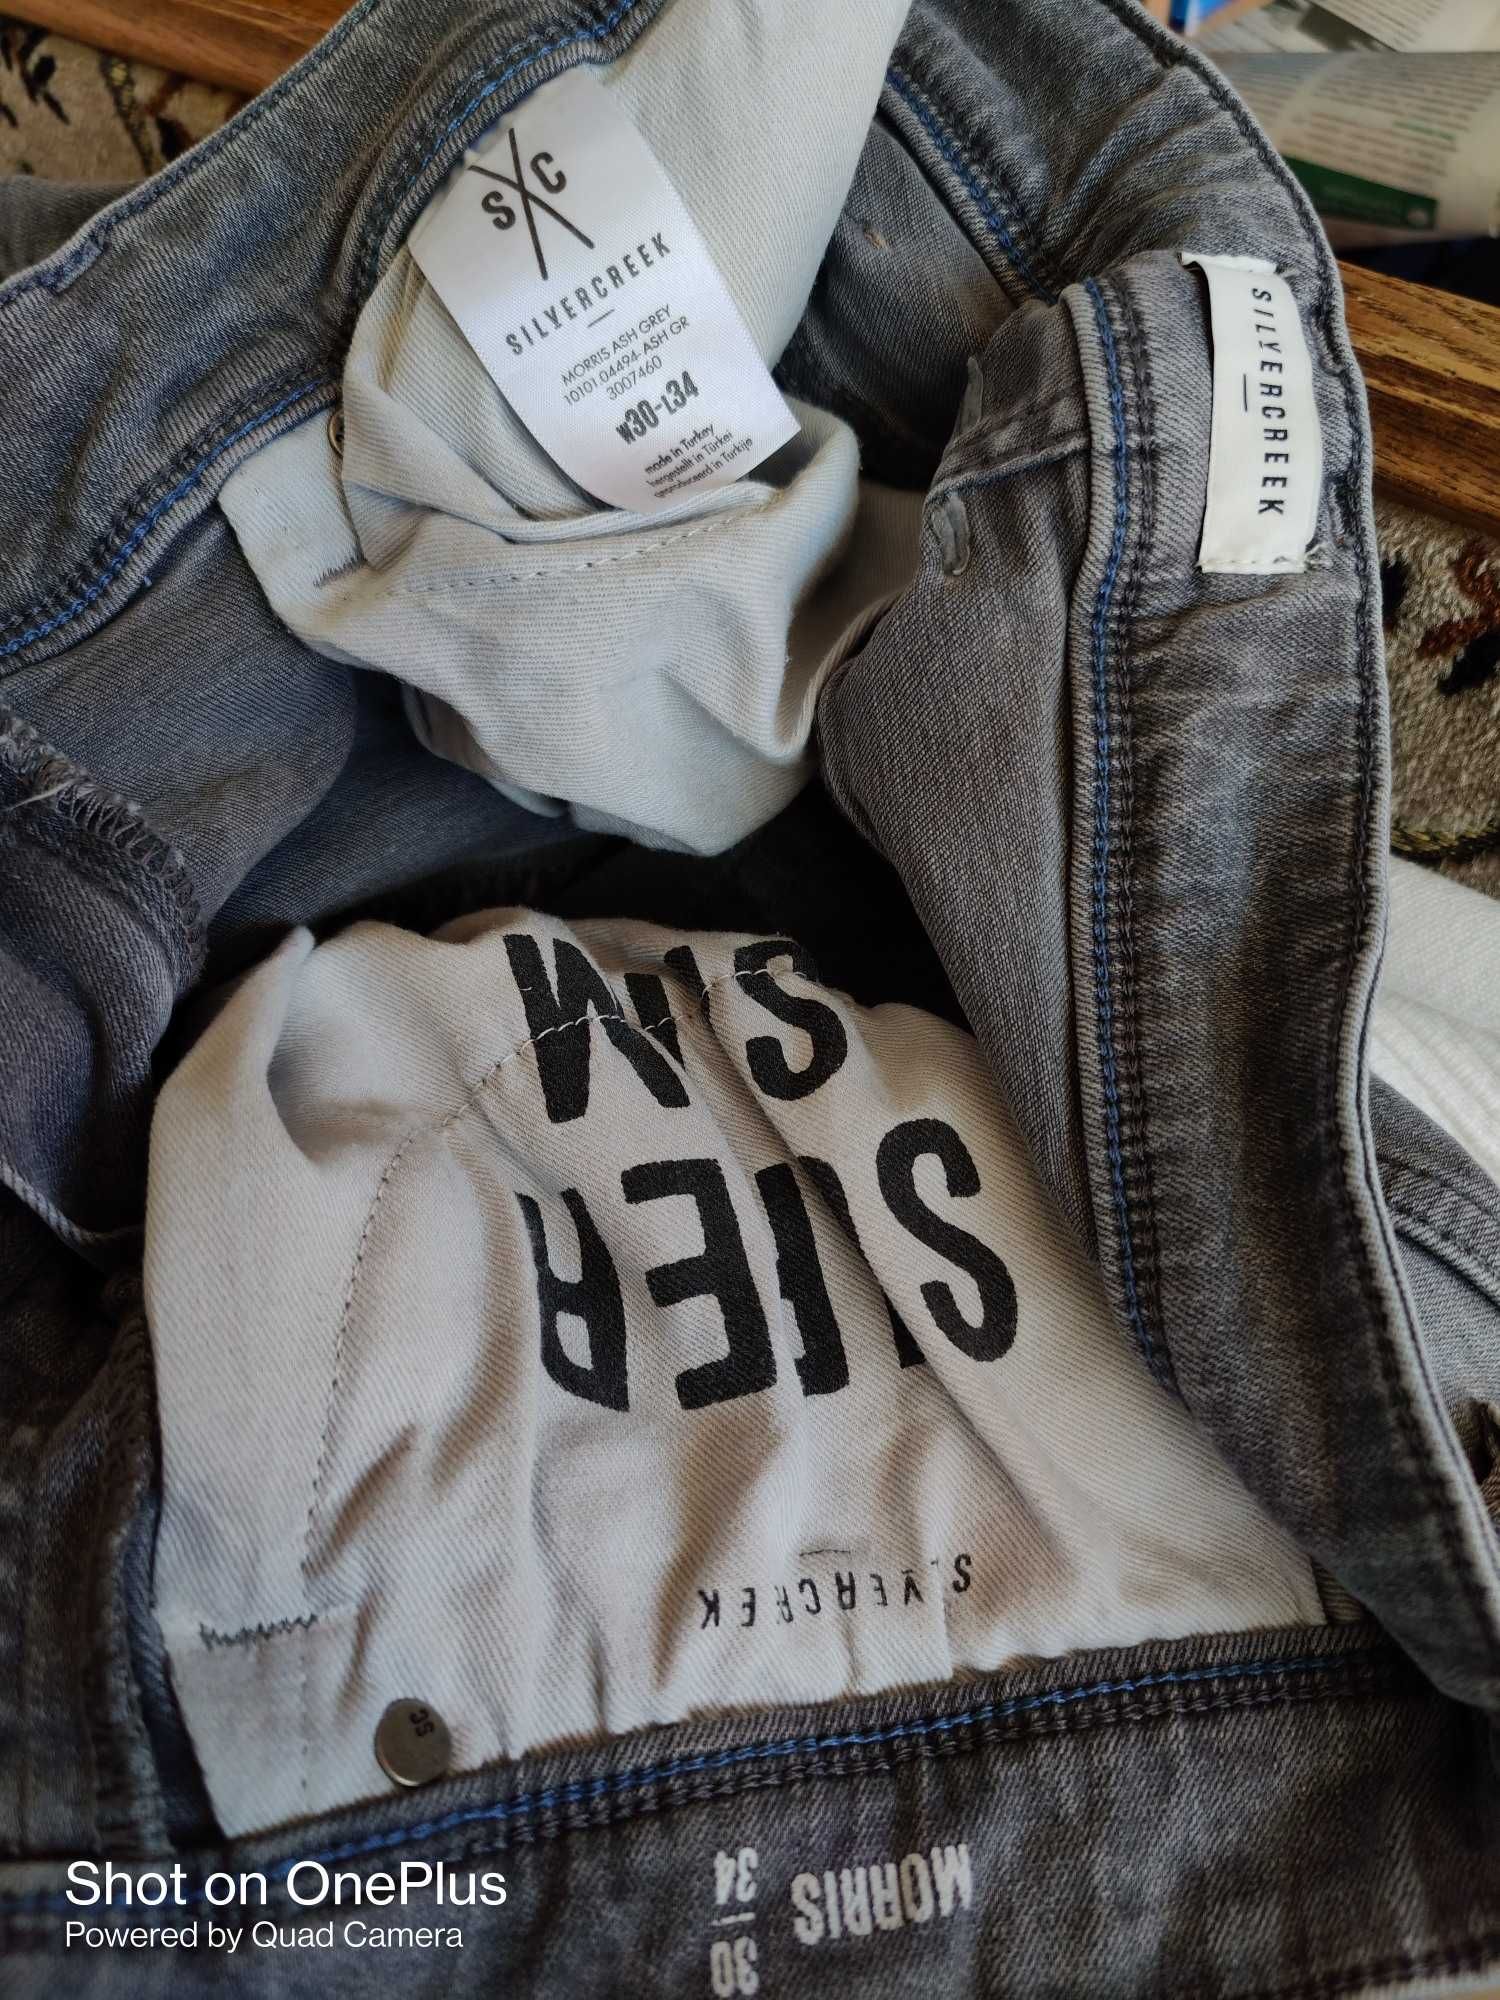 Джинсы Silver Creek jeans Дания W30 stretch grey.